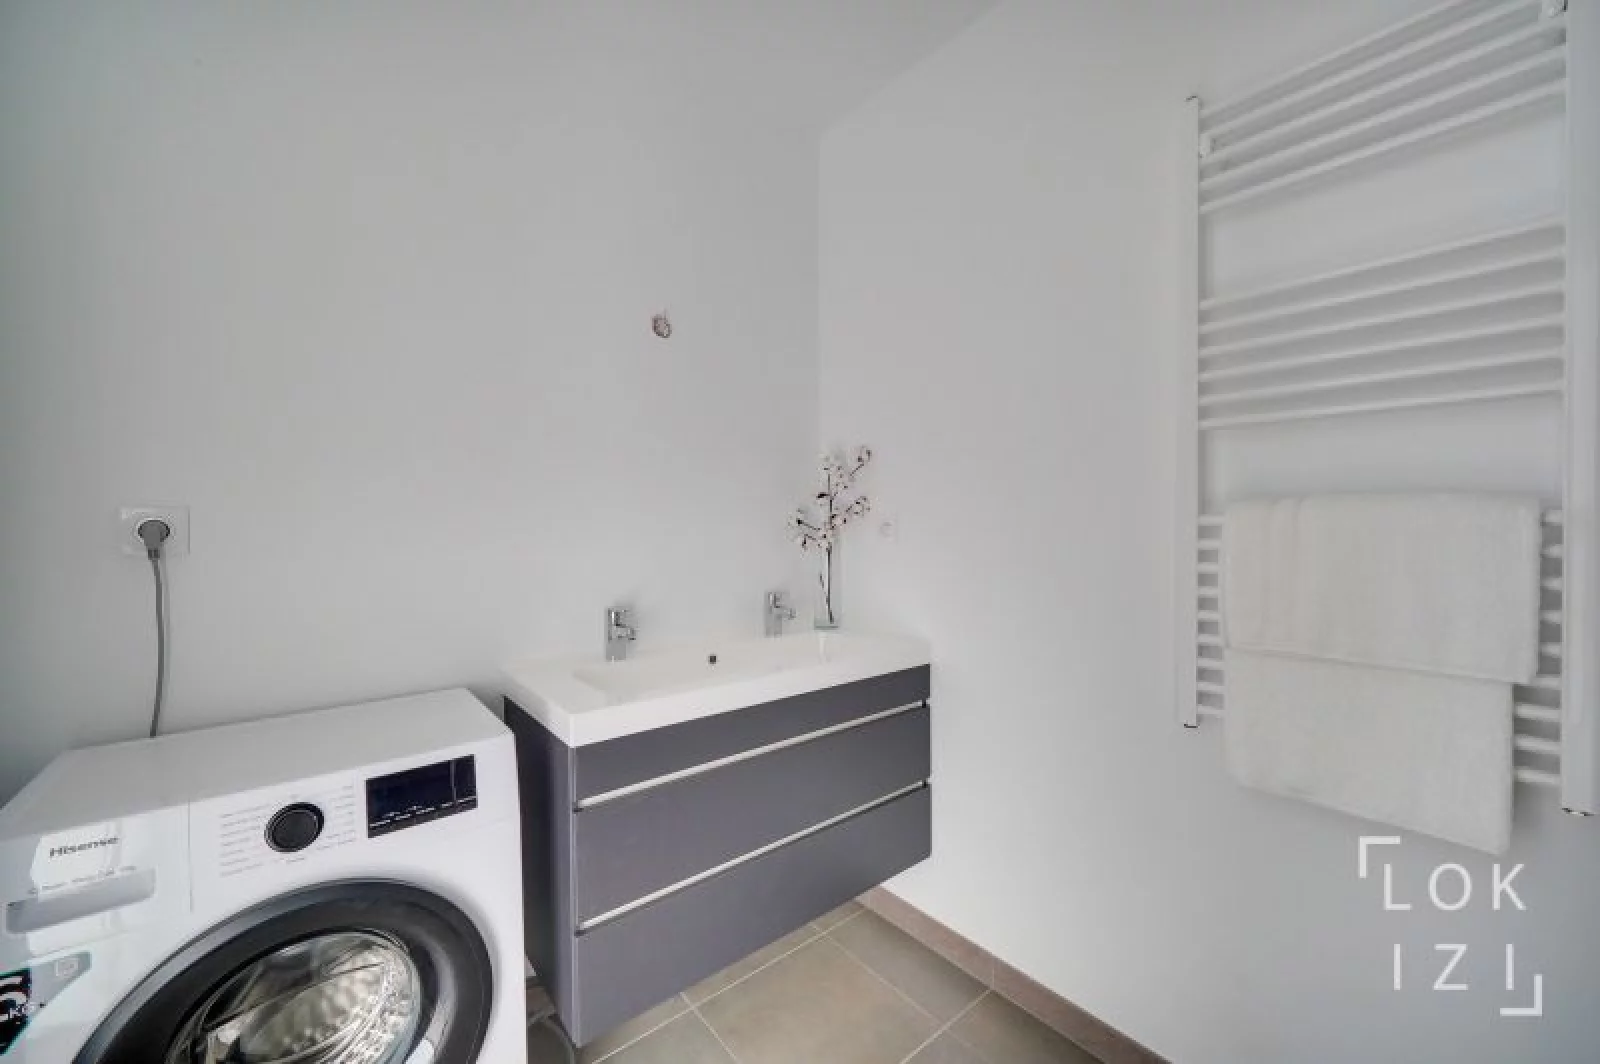 Location appartement meublé 3 pièces 65 m² (Bordeaux - Talence)